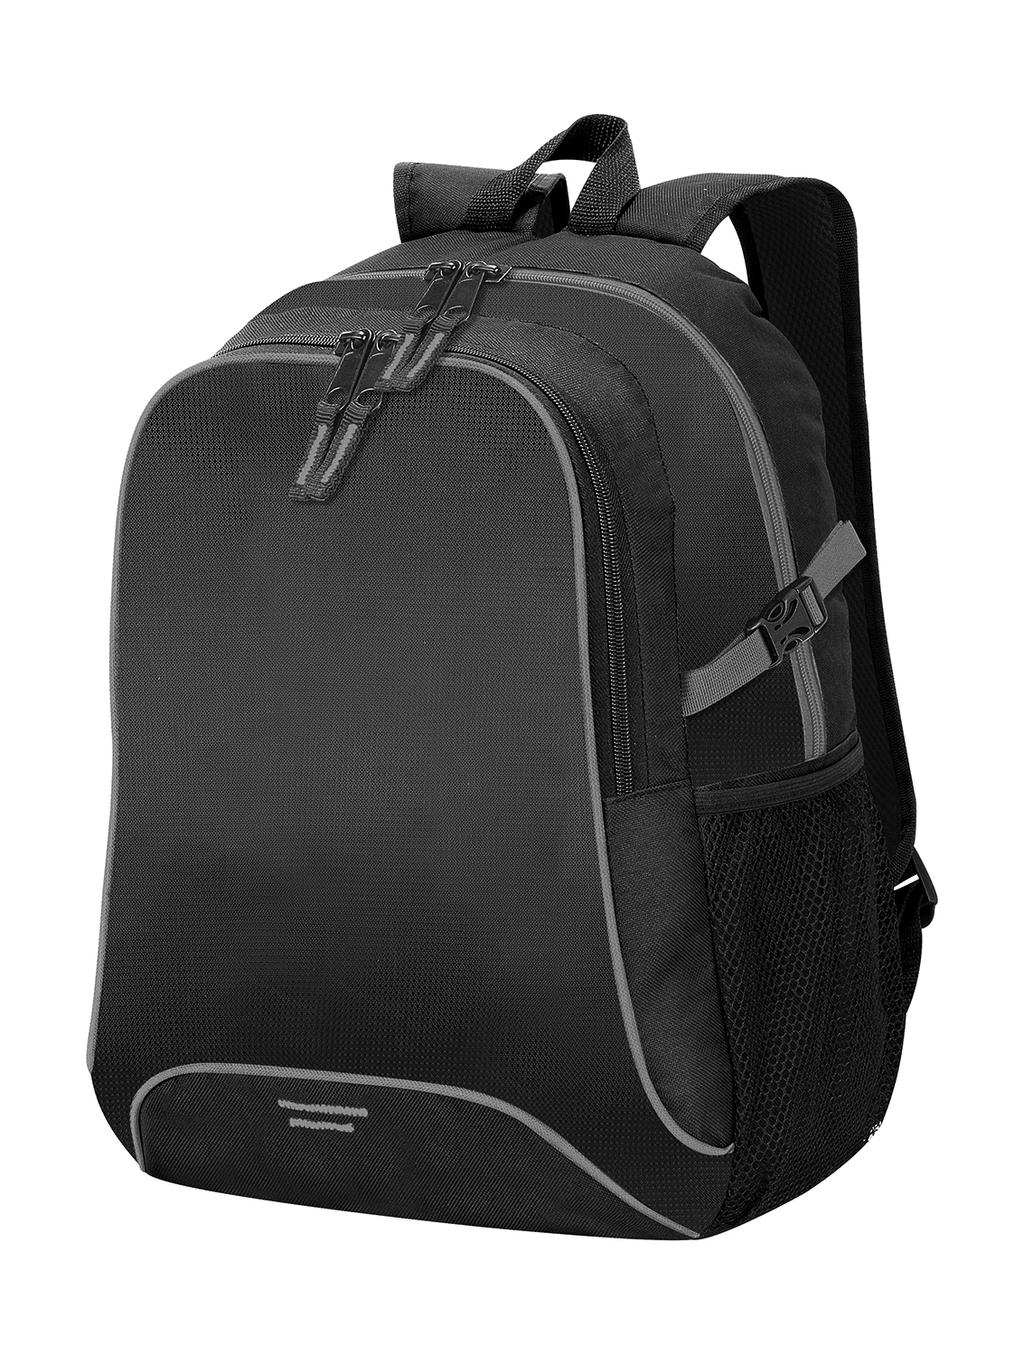  Osaka Basic Backpack in Farbe Black/Light Grey